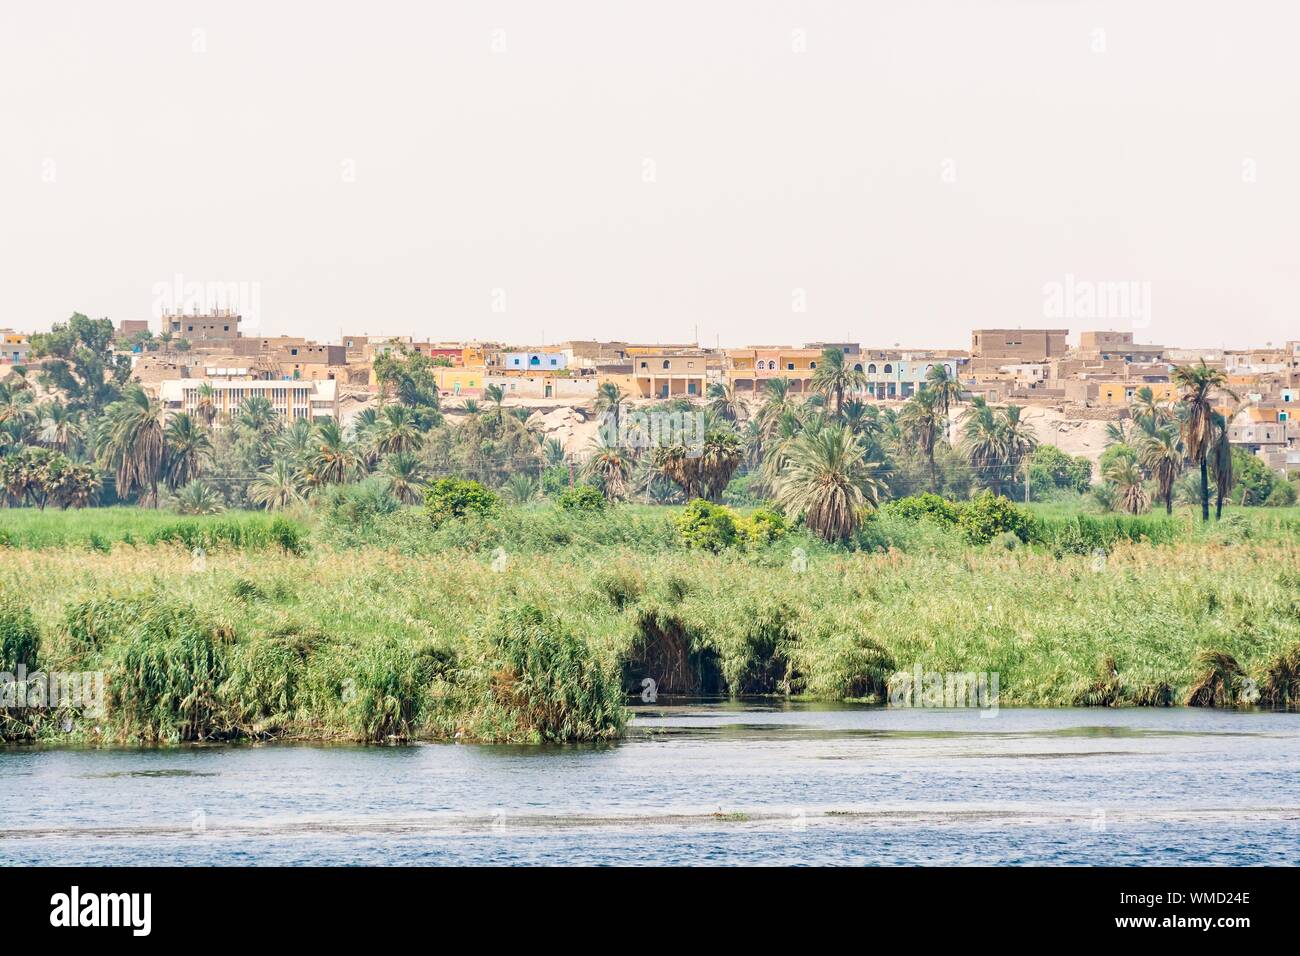 Banco de río Nilo visto durante el crucero turístico, Egipto Foto de stock